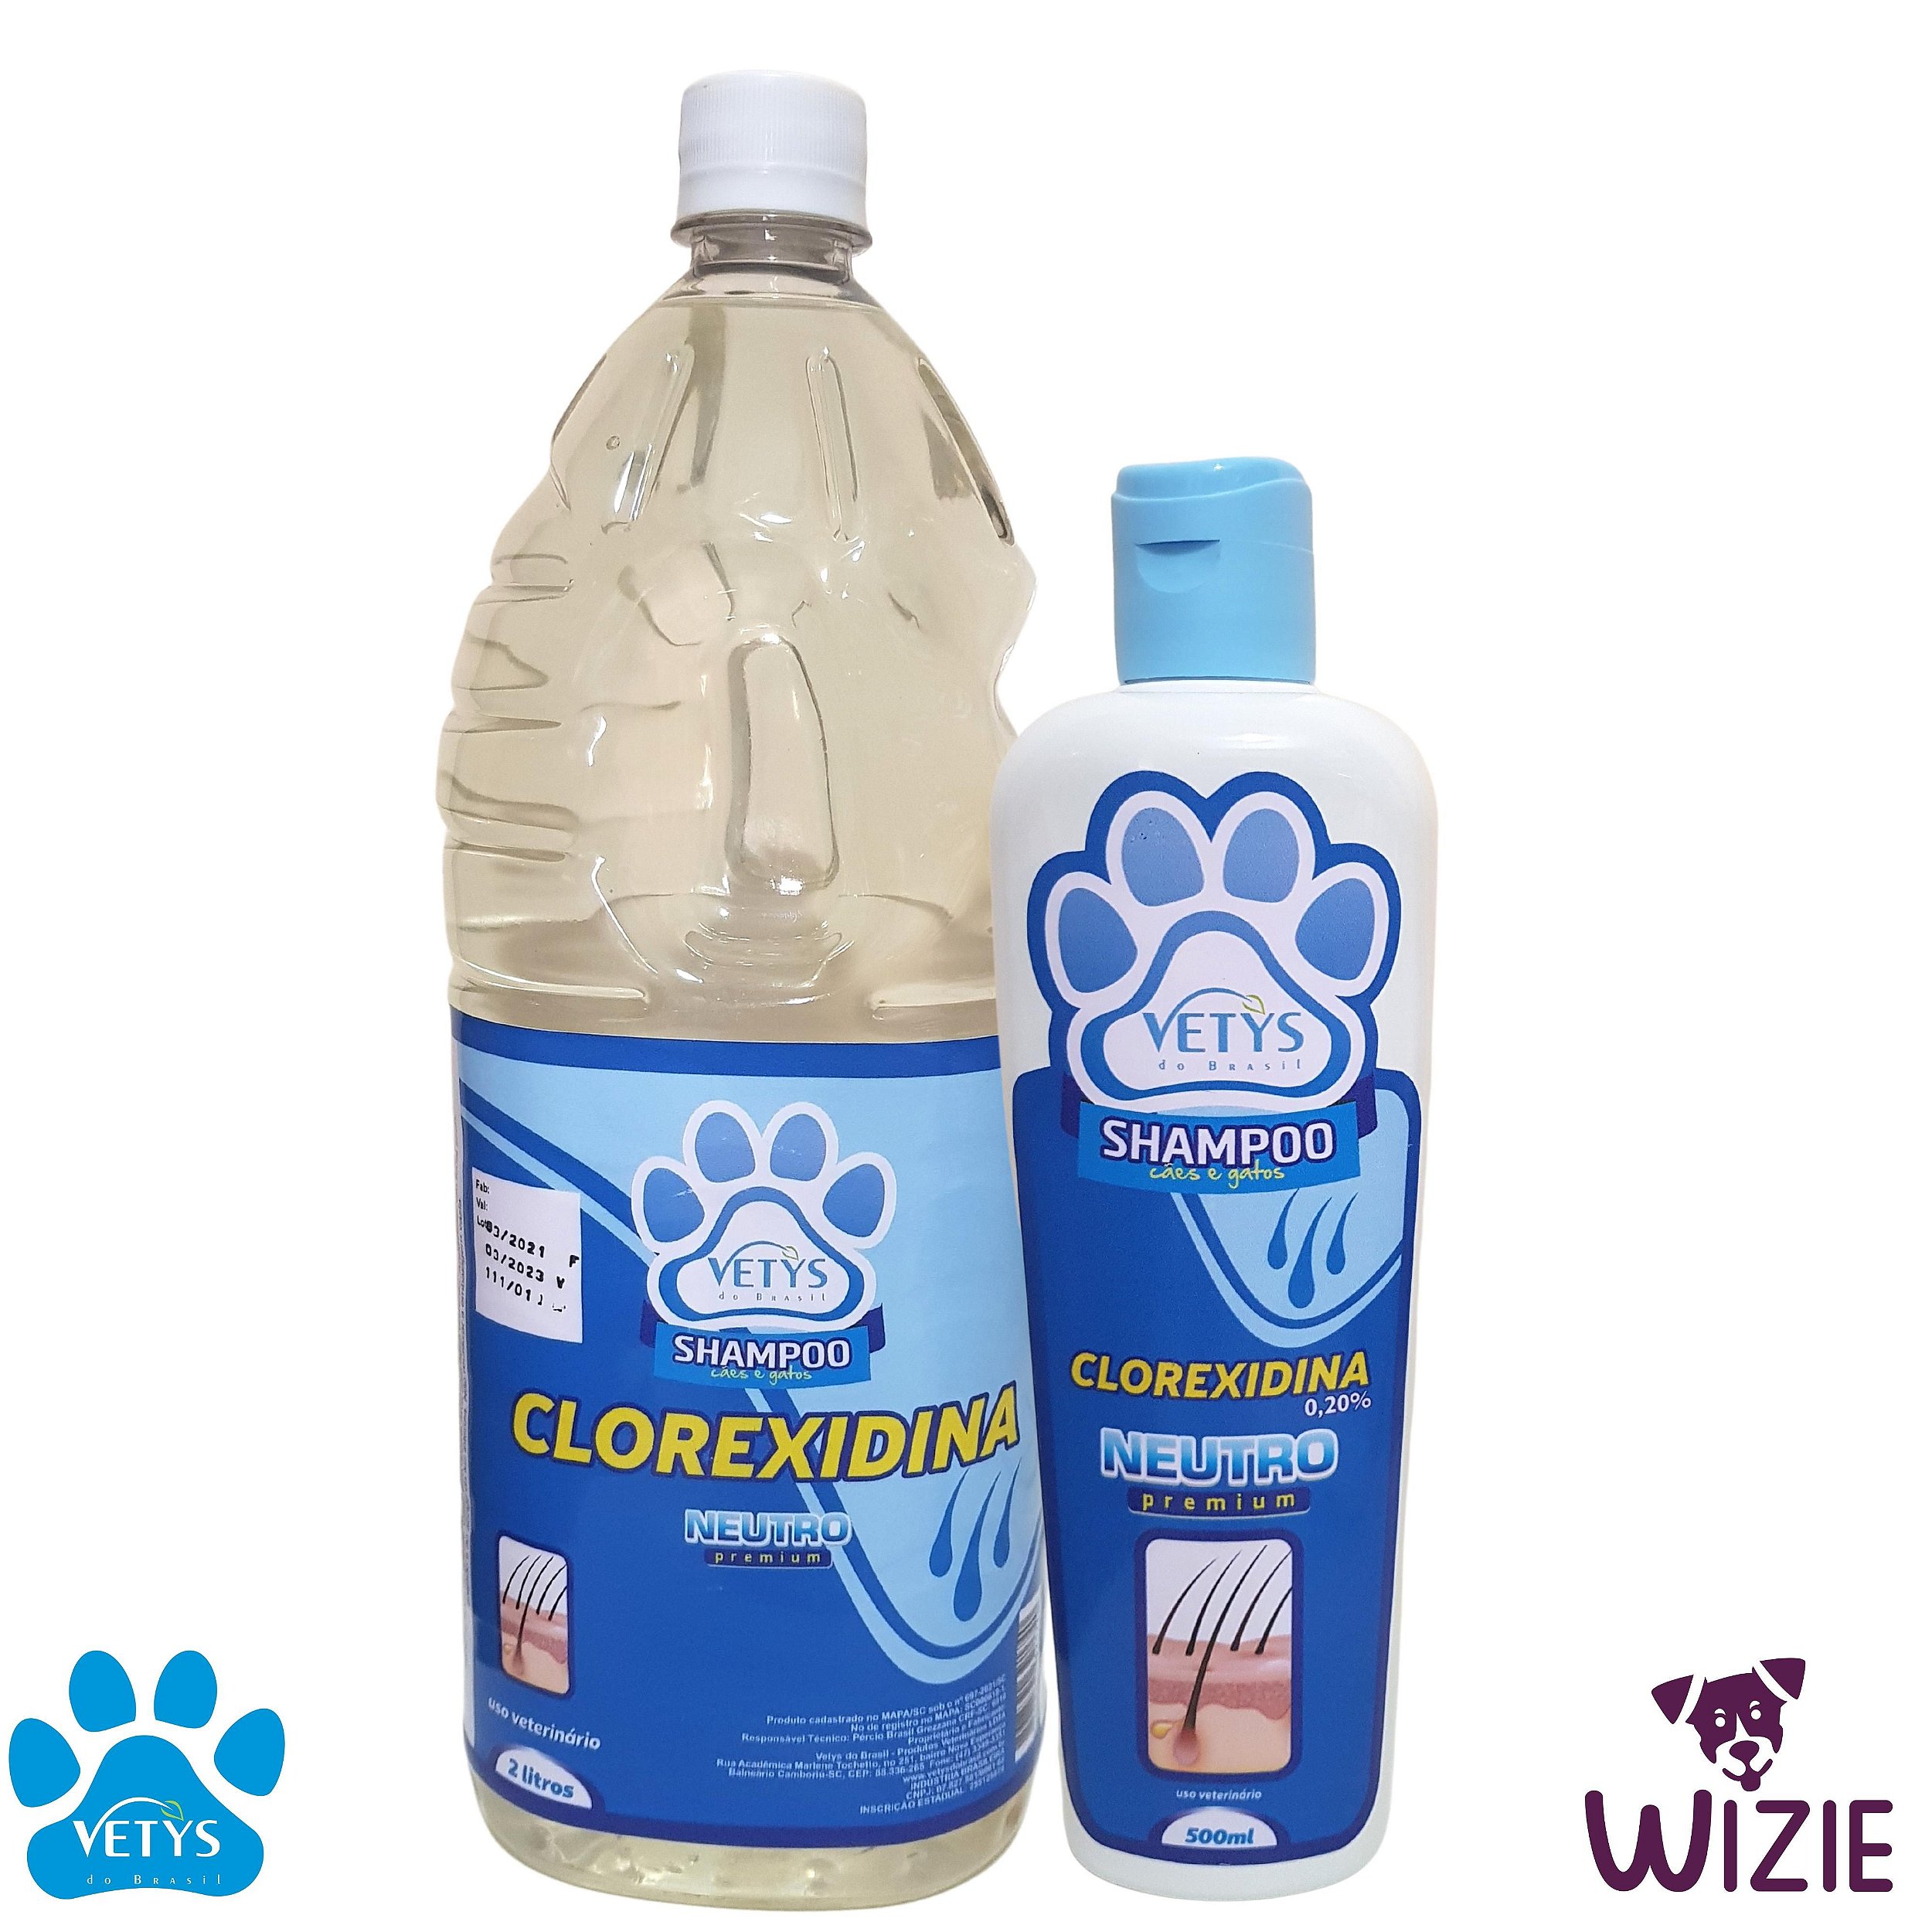 Shampoo Clorexidina - Wizie Pet - Para o seu Banho e Tosa